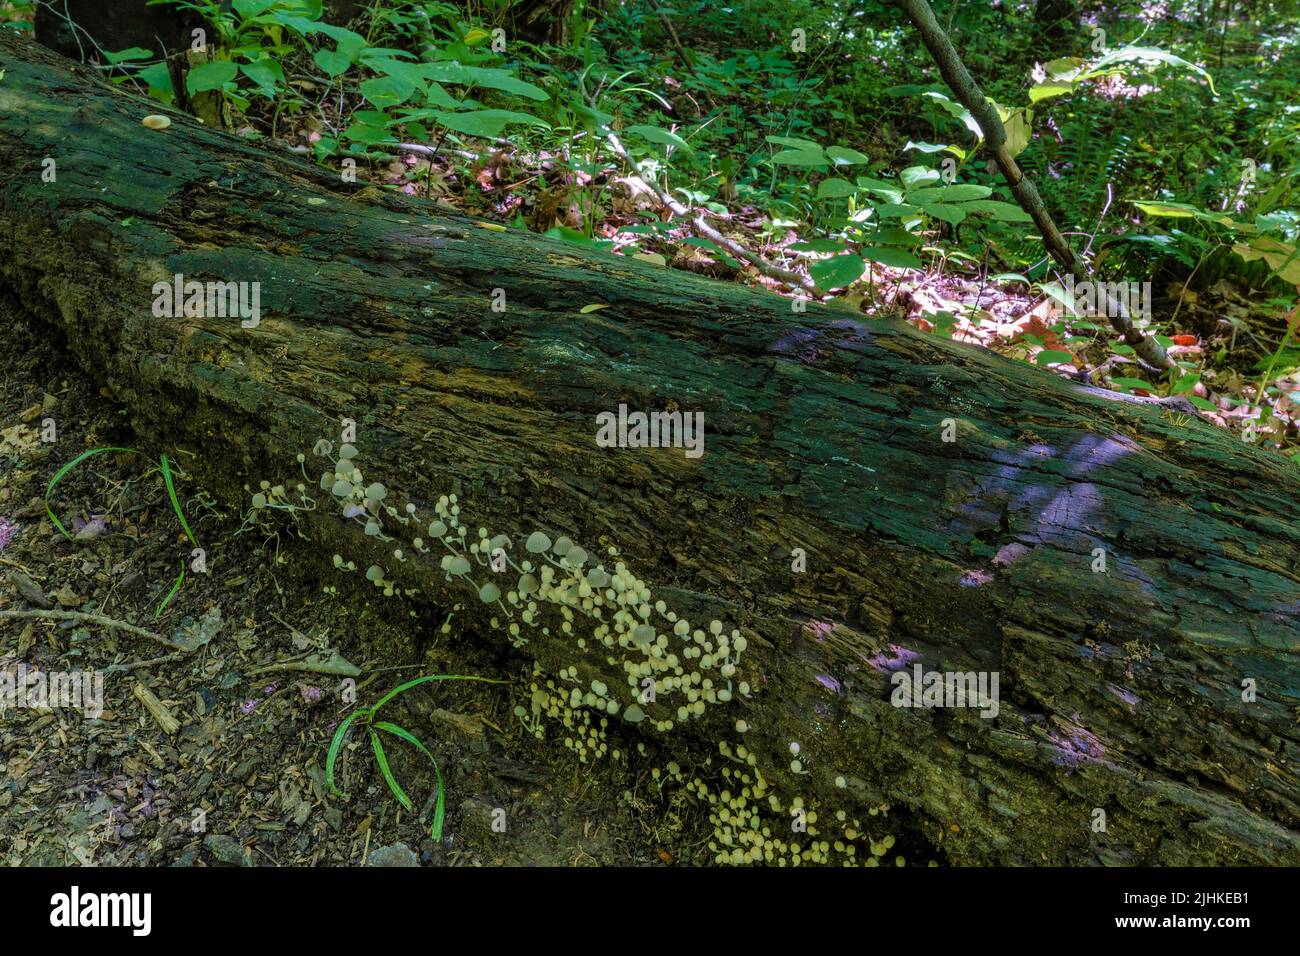 Primer plano de hongos, conocido como nevado que crece en un árbol en un bosque a lo largo de un camino de senderismo. Foto de stock